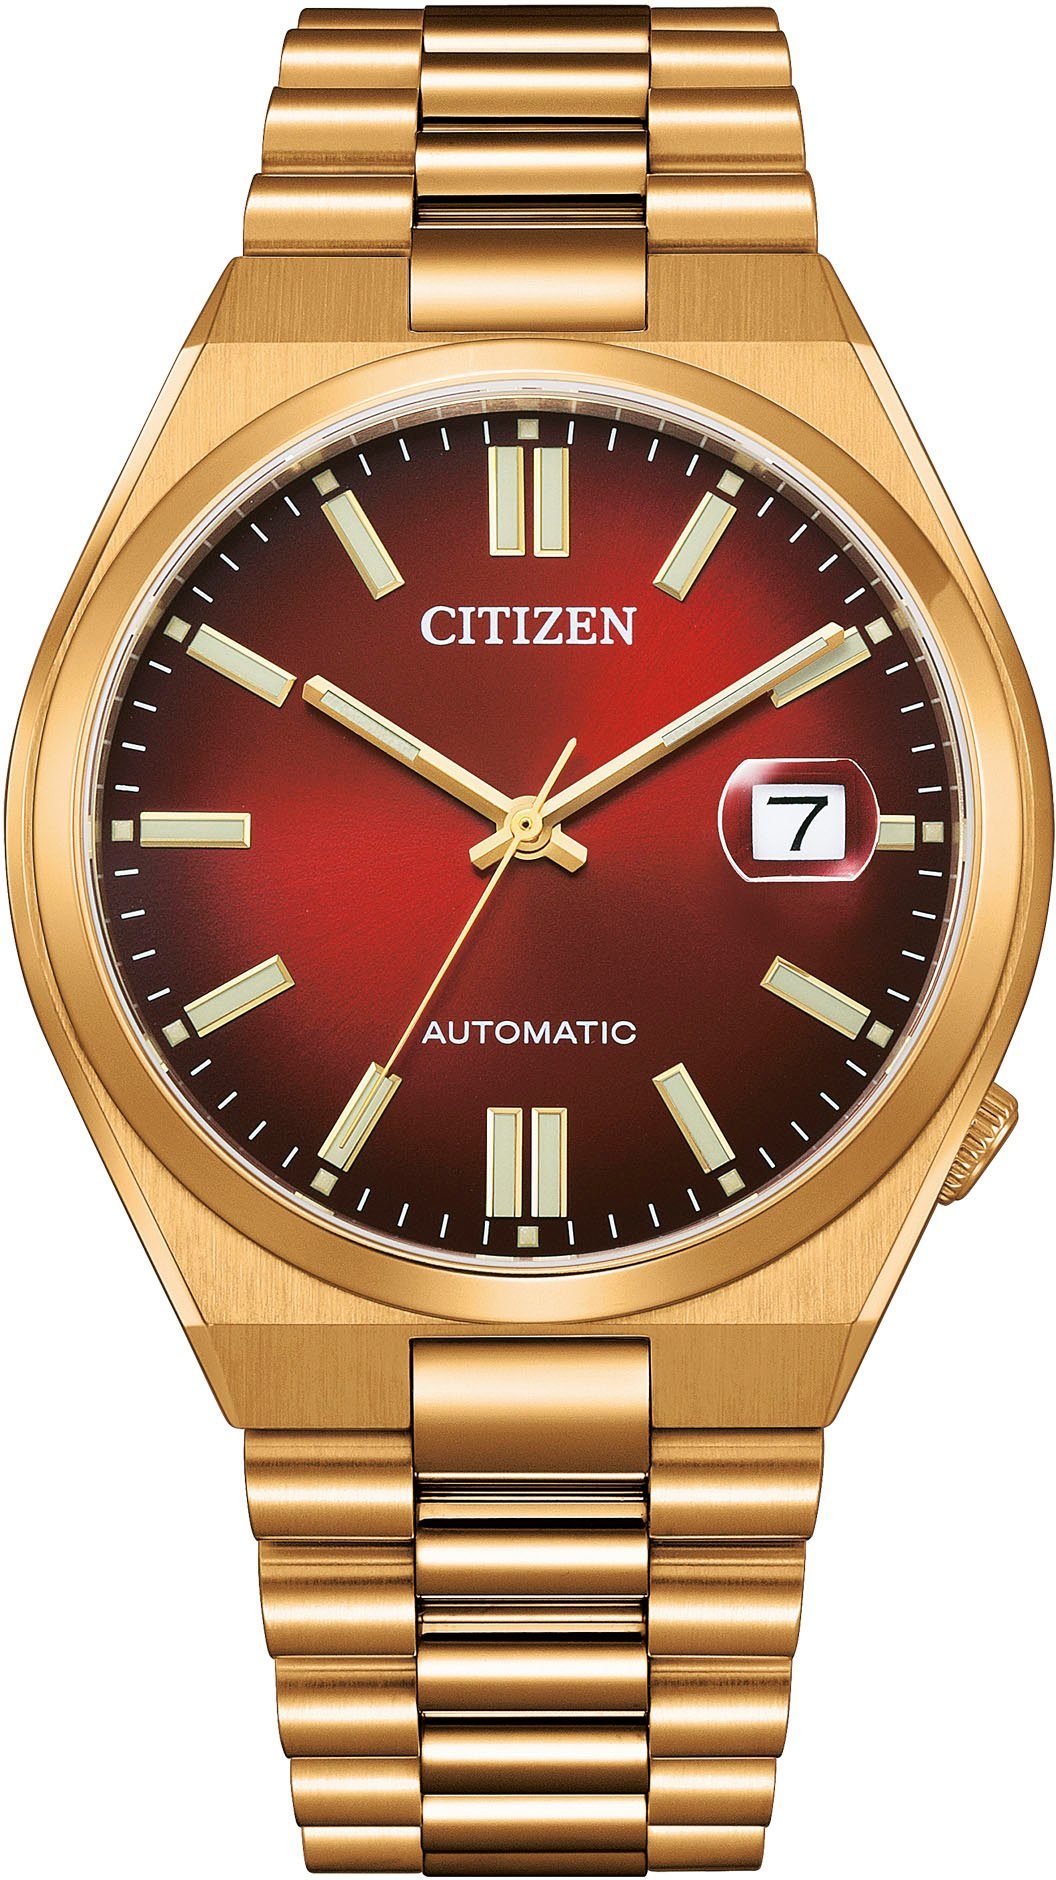 Goldene Citizen OTTO | Herrenuhren kaufen online